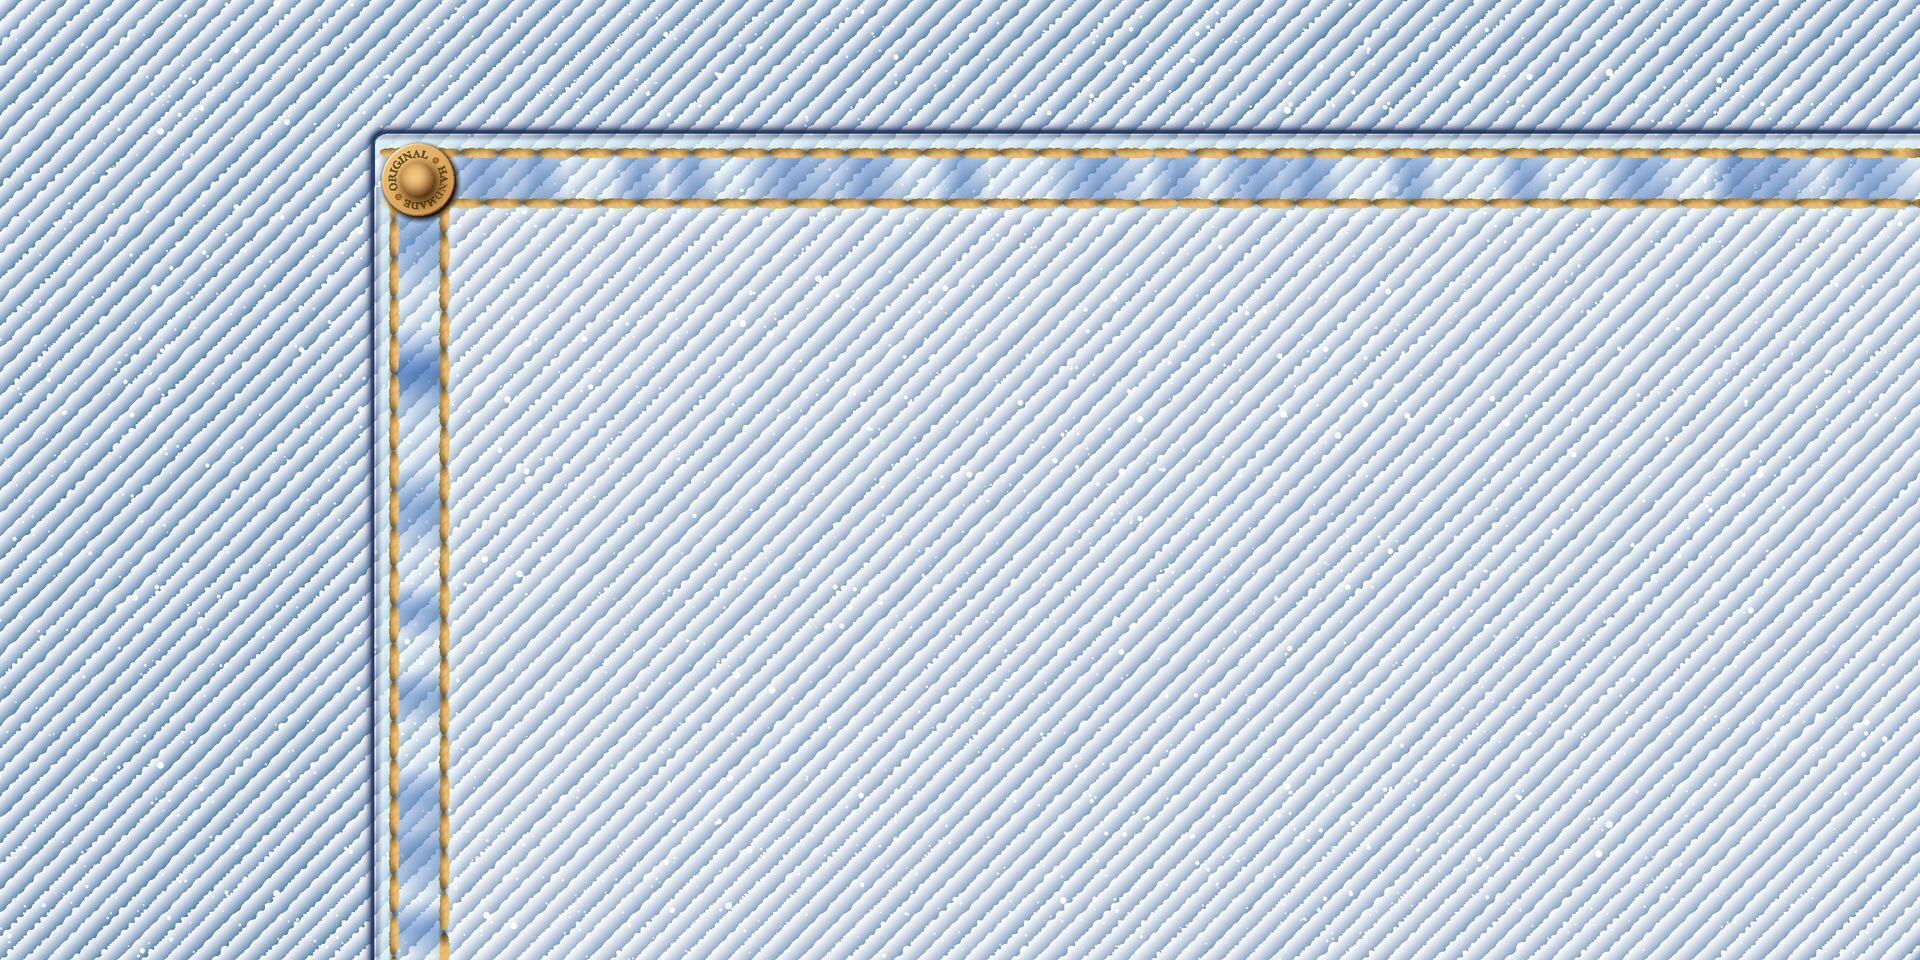 denim blå jean ljus tvätta textil- mönster bakgrund med guld sömmar, veck och mässing stift ram illustration. vektor